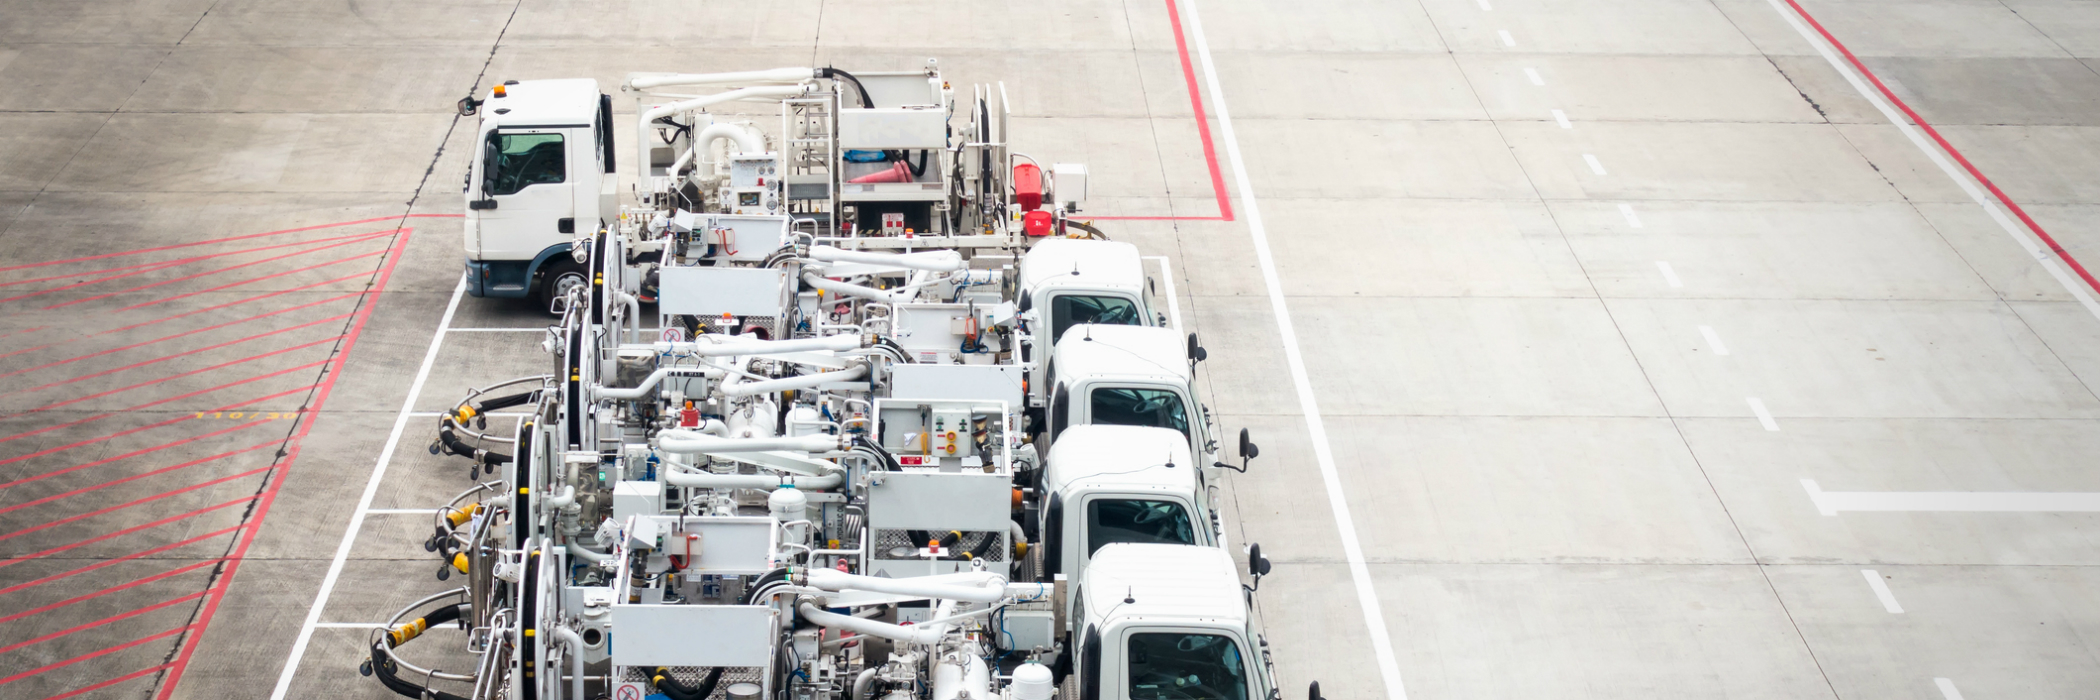 Fleet of airport fuel trucks